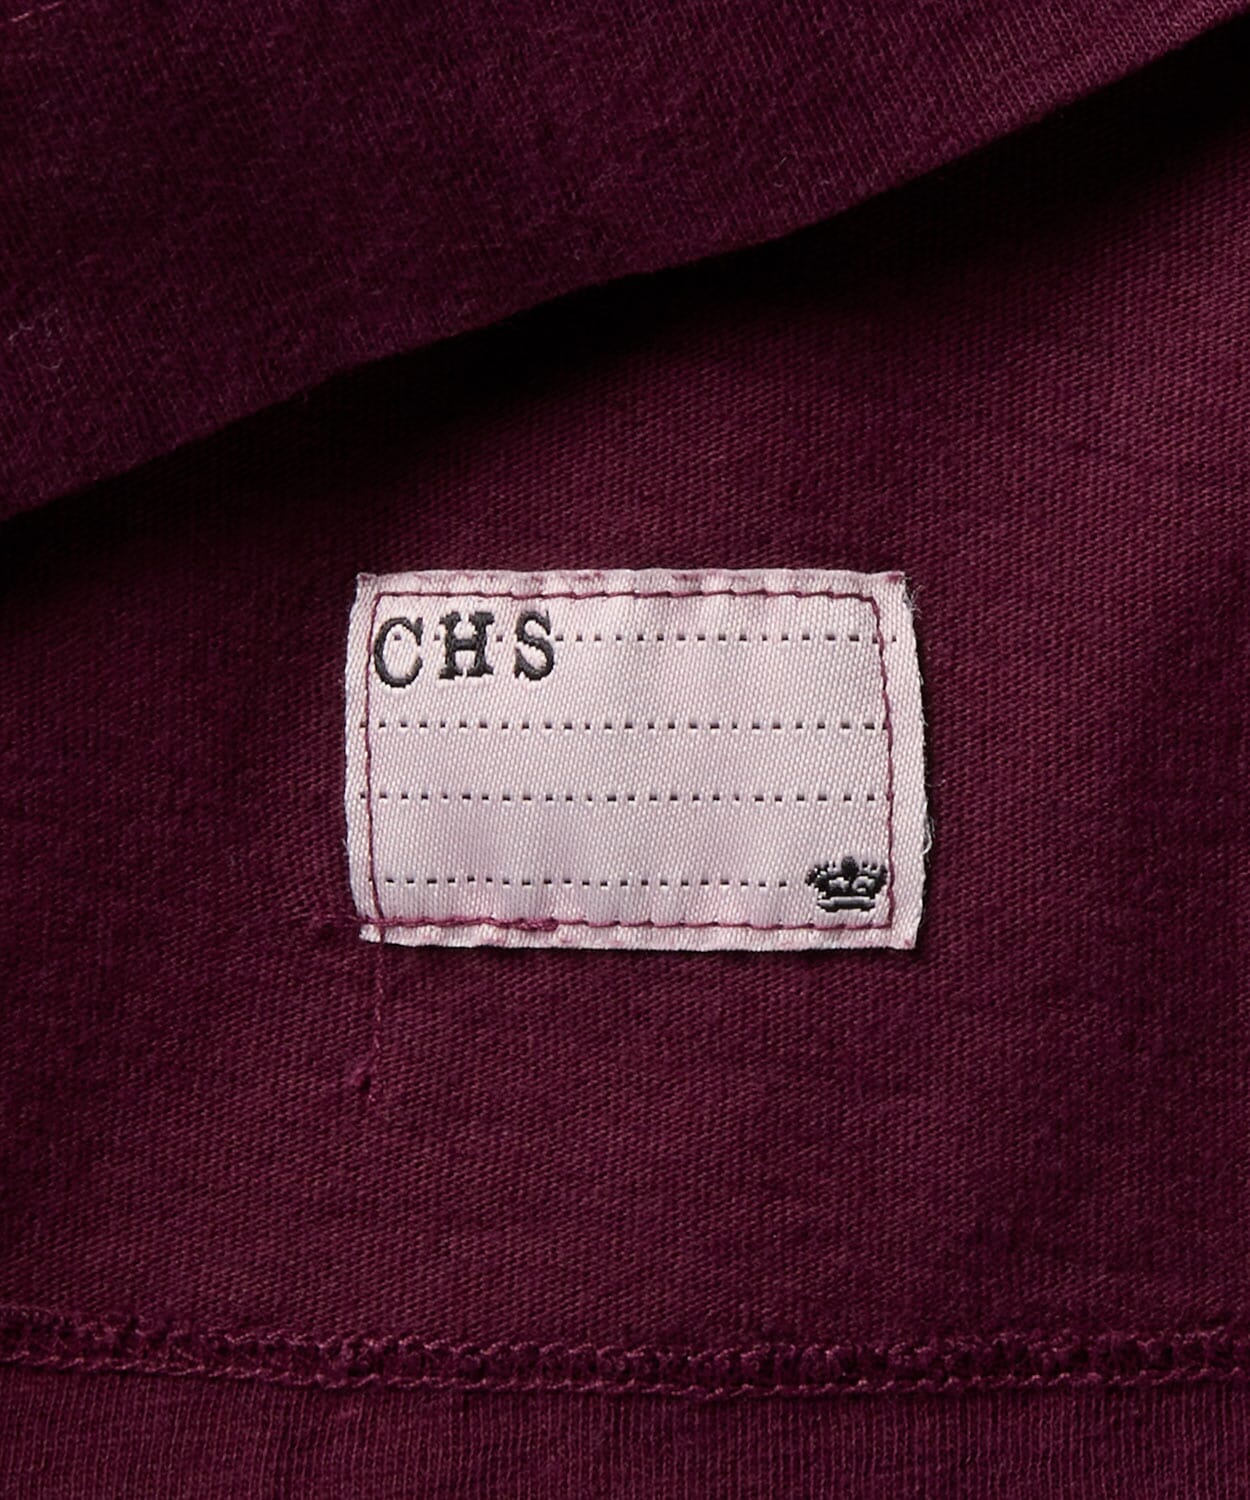 detail of a mens henley shirt